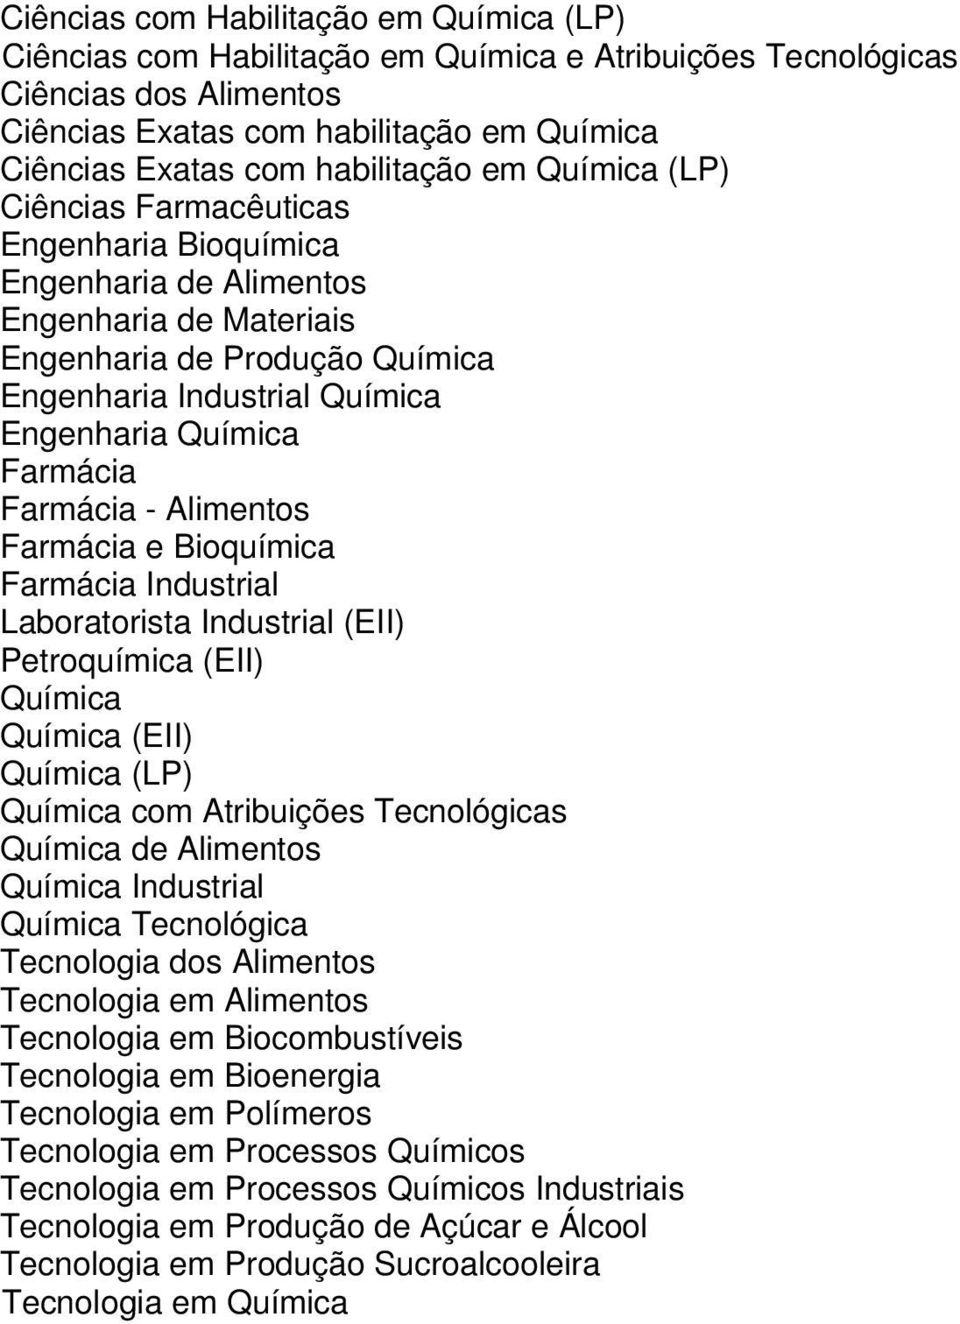 Alimentos Farmácia e Bioquímica Farmácia Industrial Laboratorista Industrial (EII) Petroquímica (EII) Química Química (EII) Química com Atribuições Tecnológicas Química de Alimentos Química